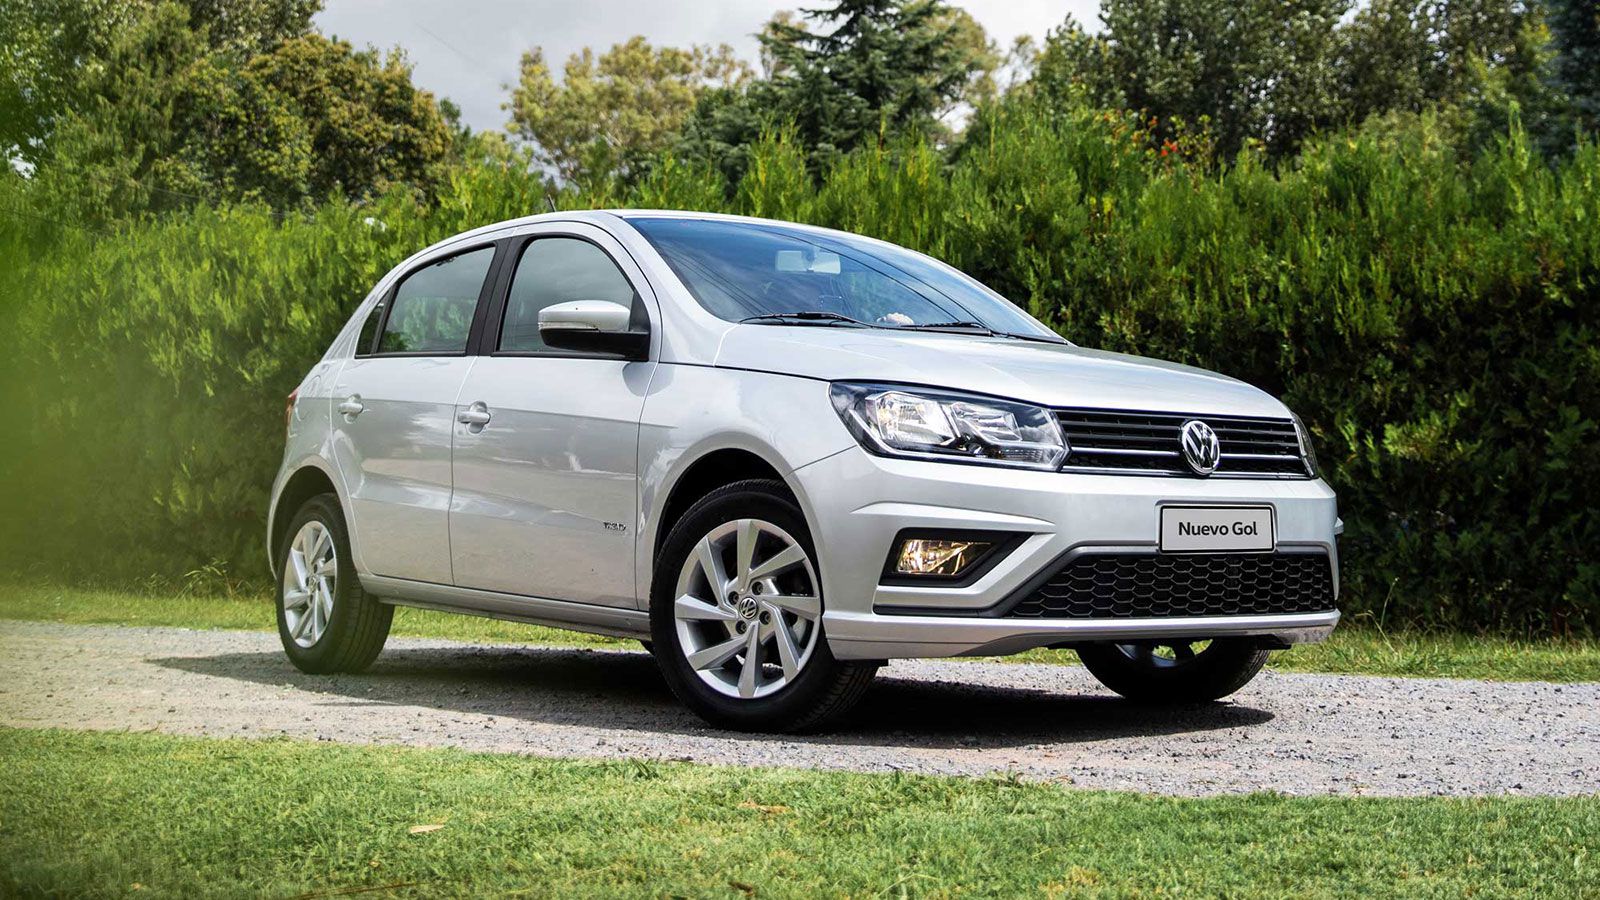 VW Argentina dejará de comercializar el Gol en 2022 y el Volkswagen Polo se convierte en el modelo de entrada de gama de la marca